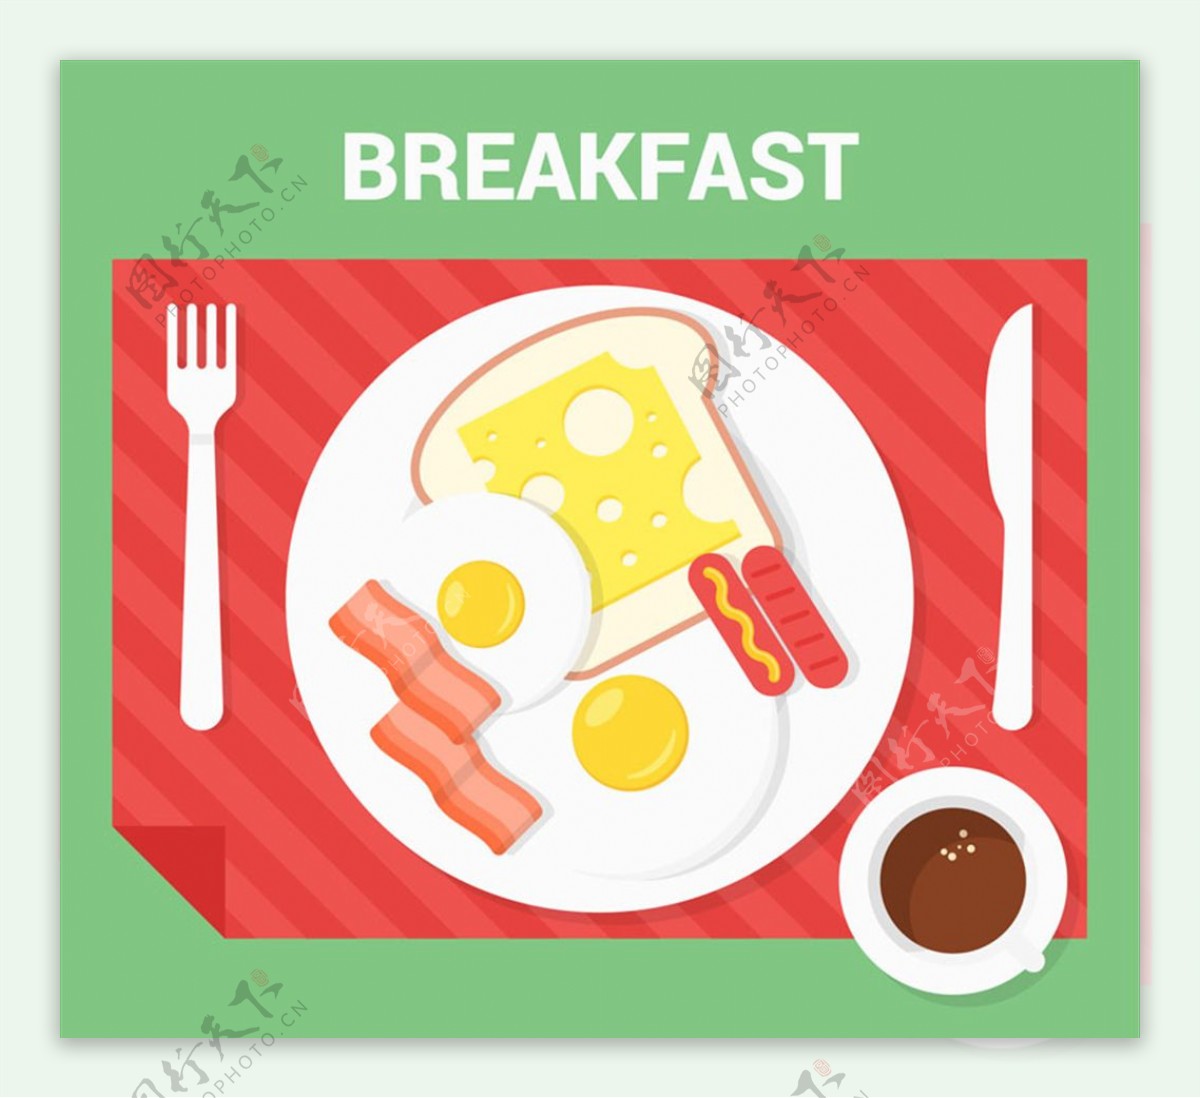 健康早餐俯视图矢量素材